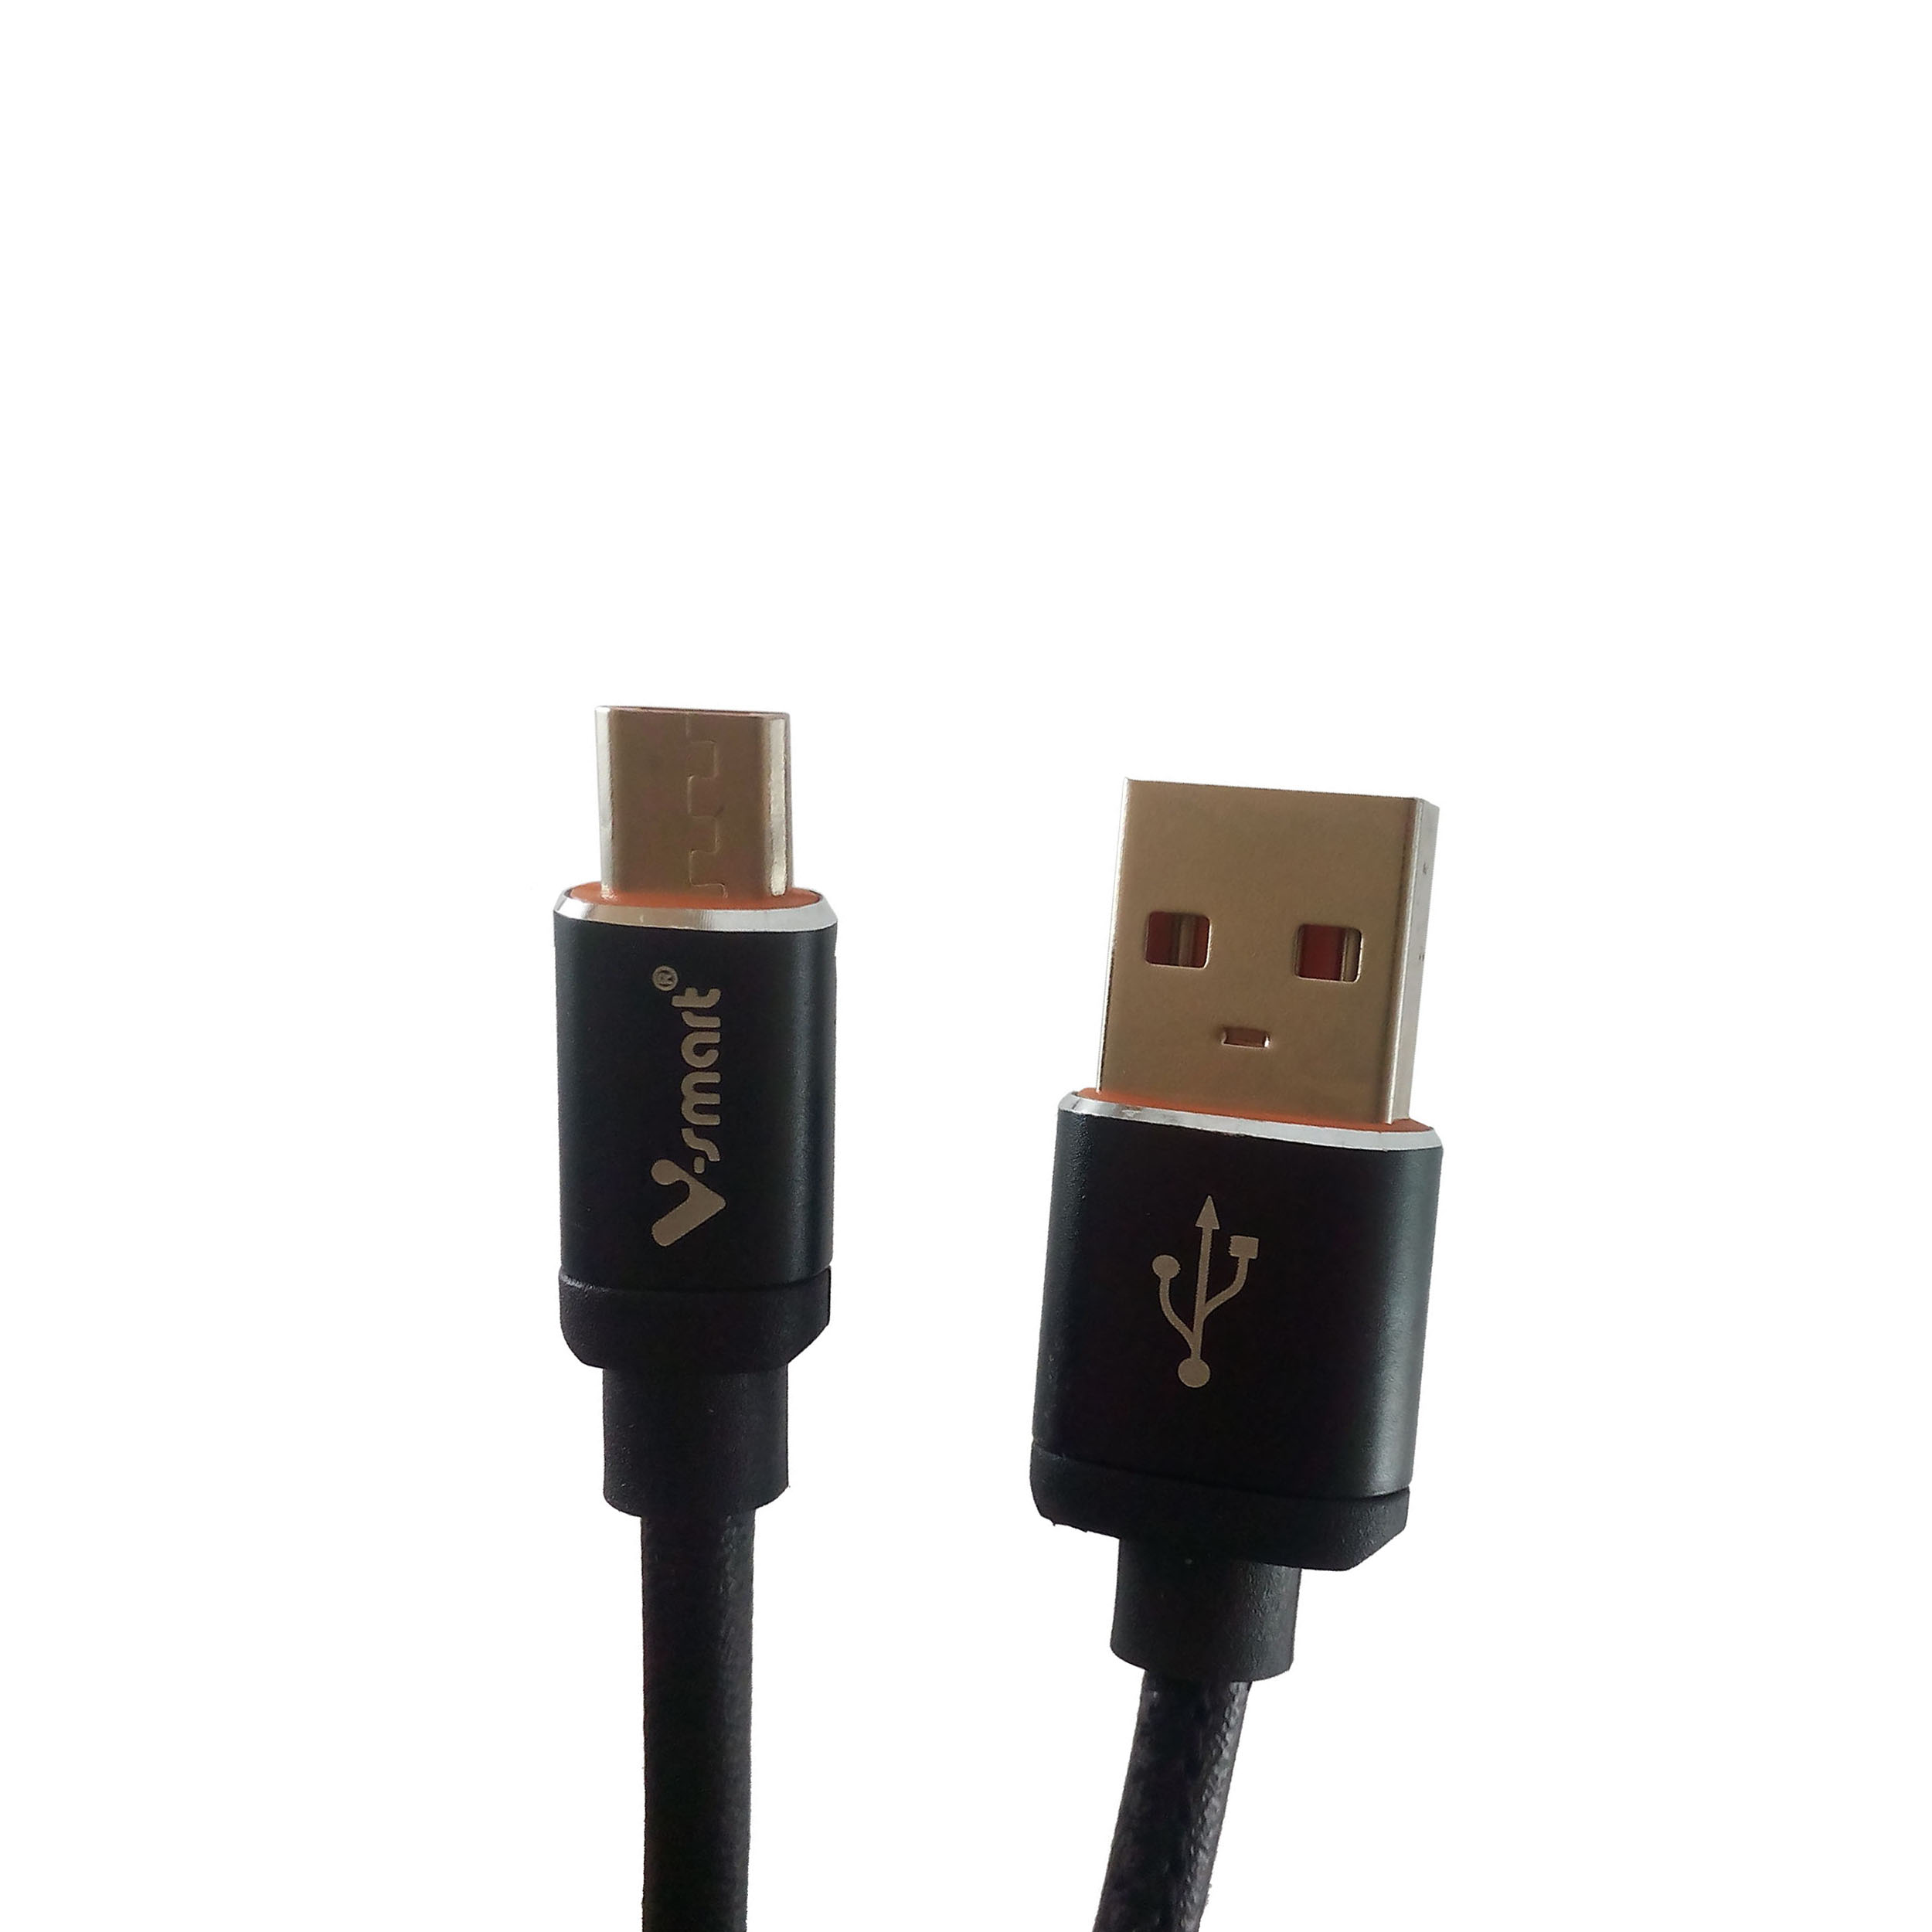 کابل تبدیل USB به MicroUSB چرمی وی اسمارت مدل VS-69 به طول 1 متر